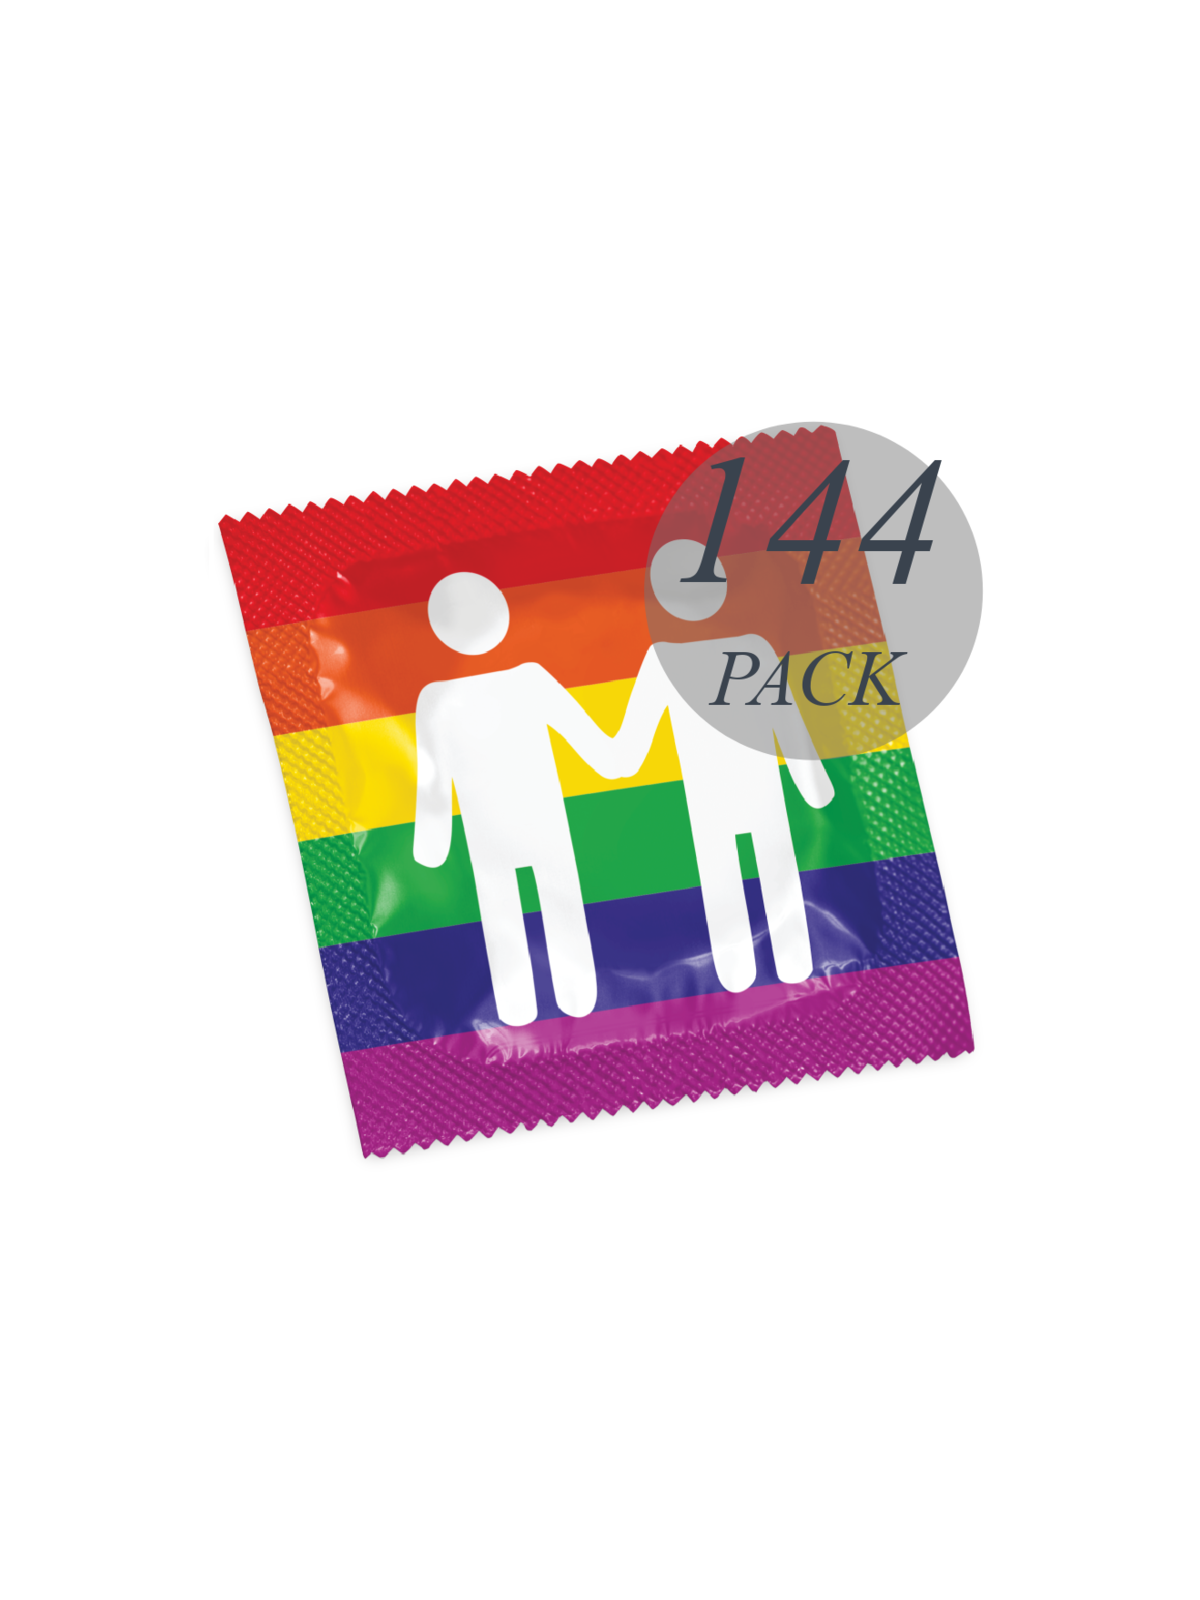 Pasante Formato Gay Pride 144 Pack - Comprar Condones naturales Pasante - Preservativos naturales (1)